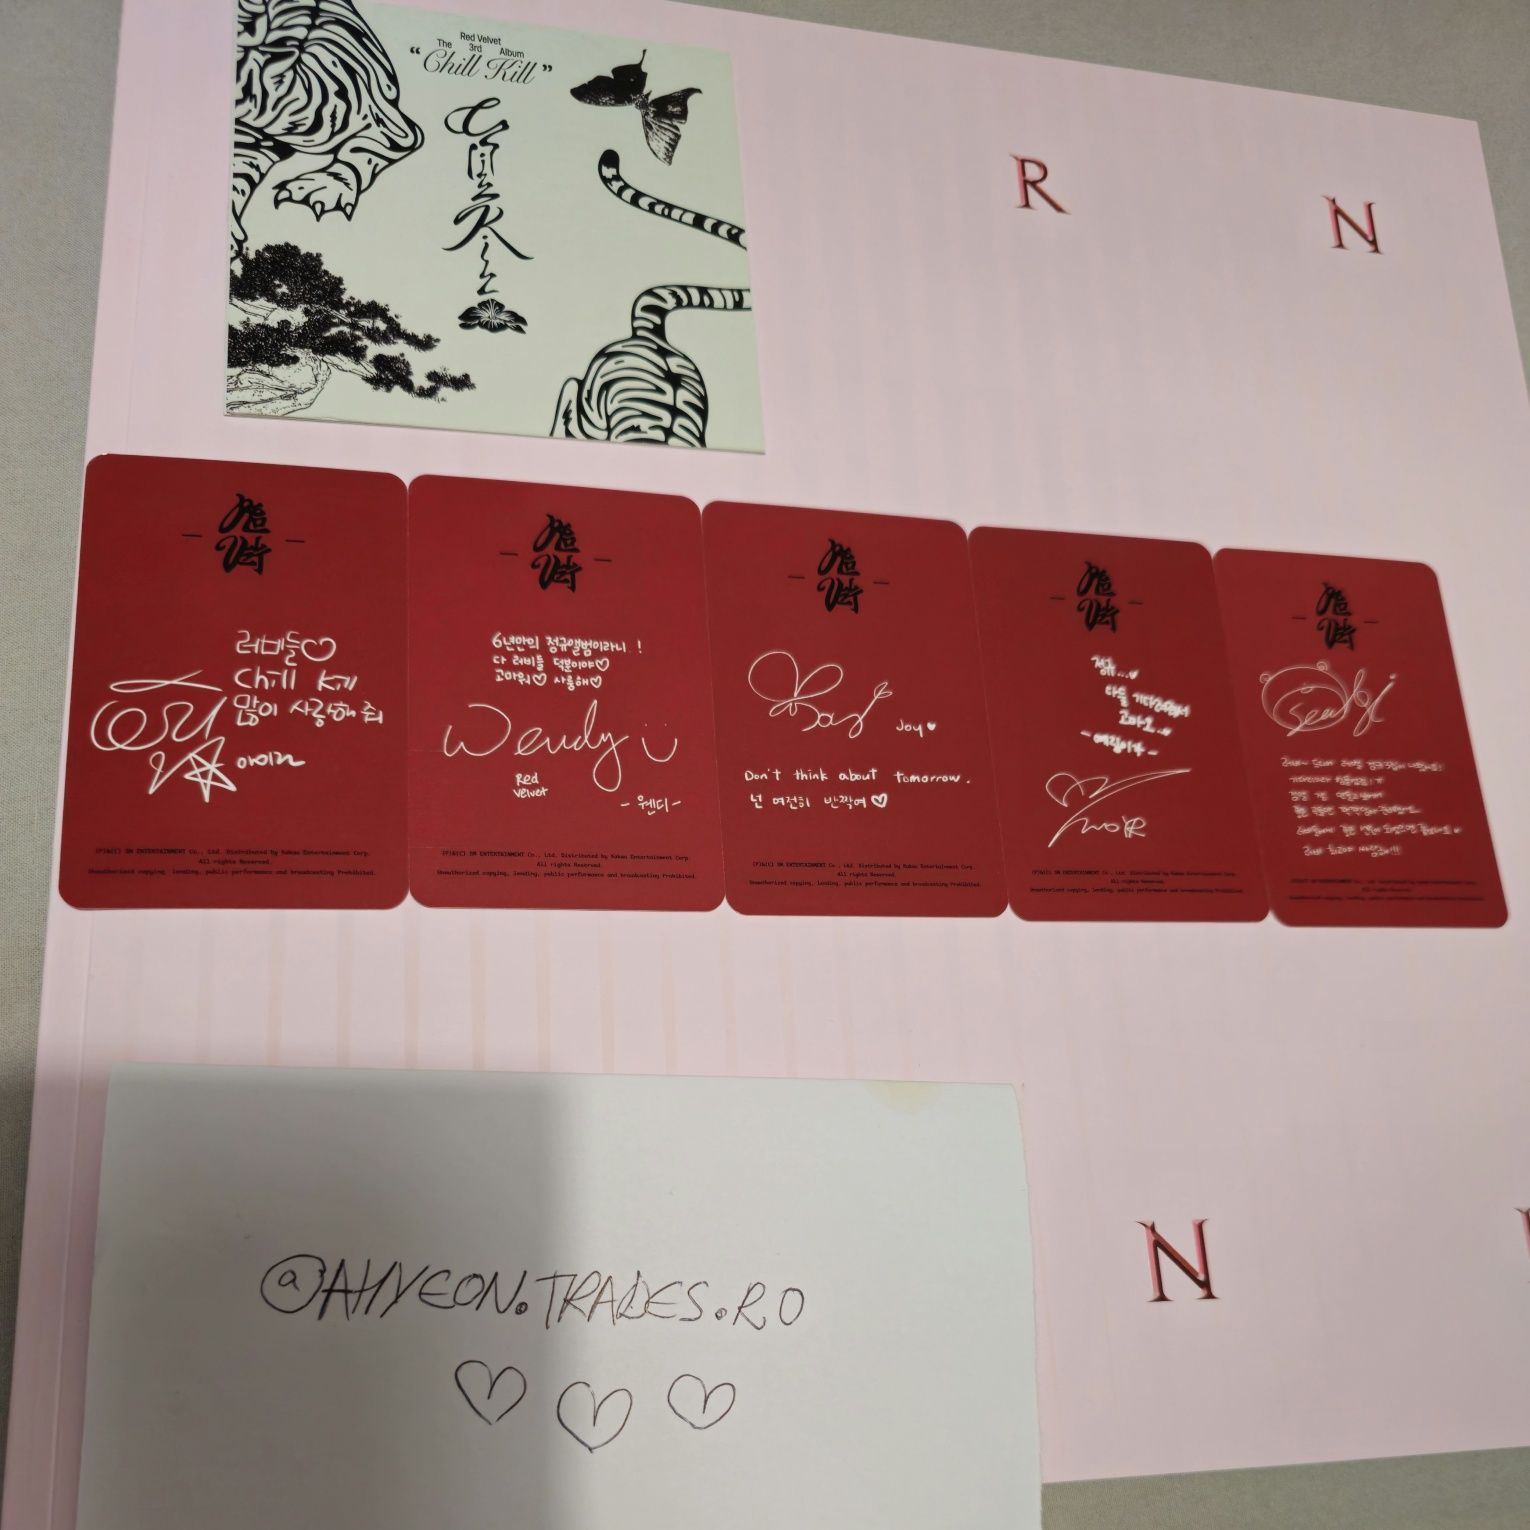 NOU! Set photocards Red Velvet Chill Kill bag ver kpop